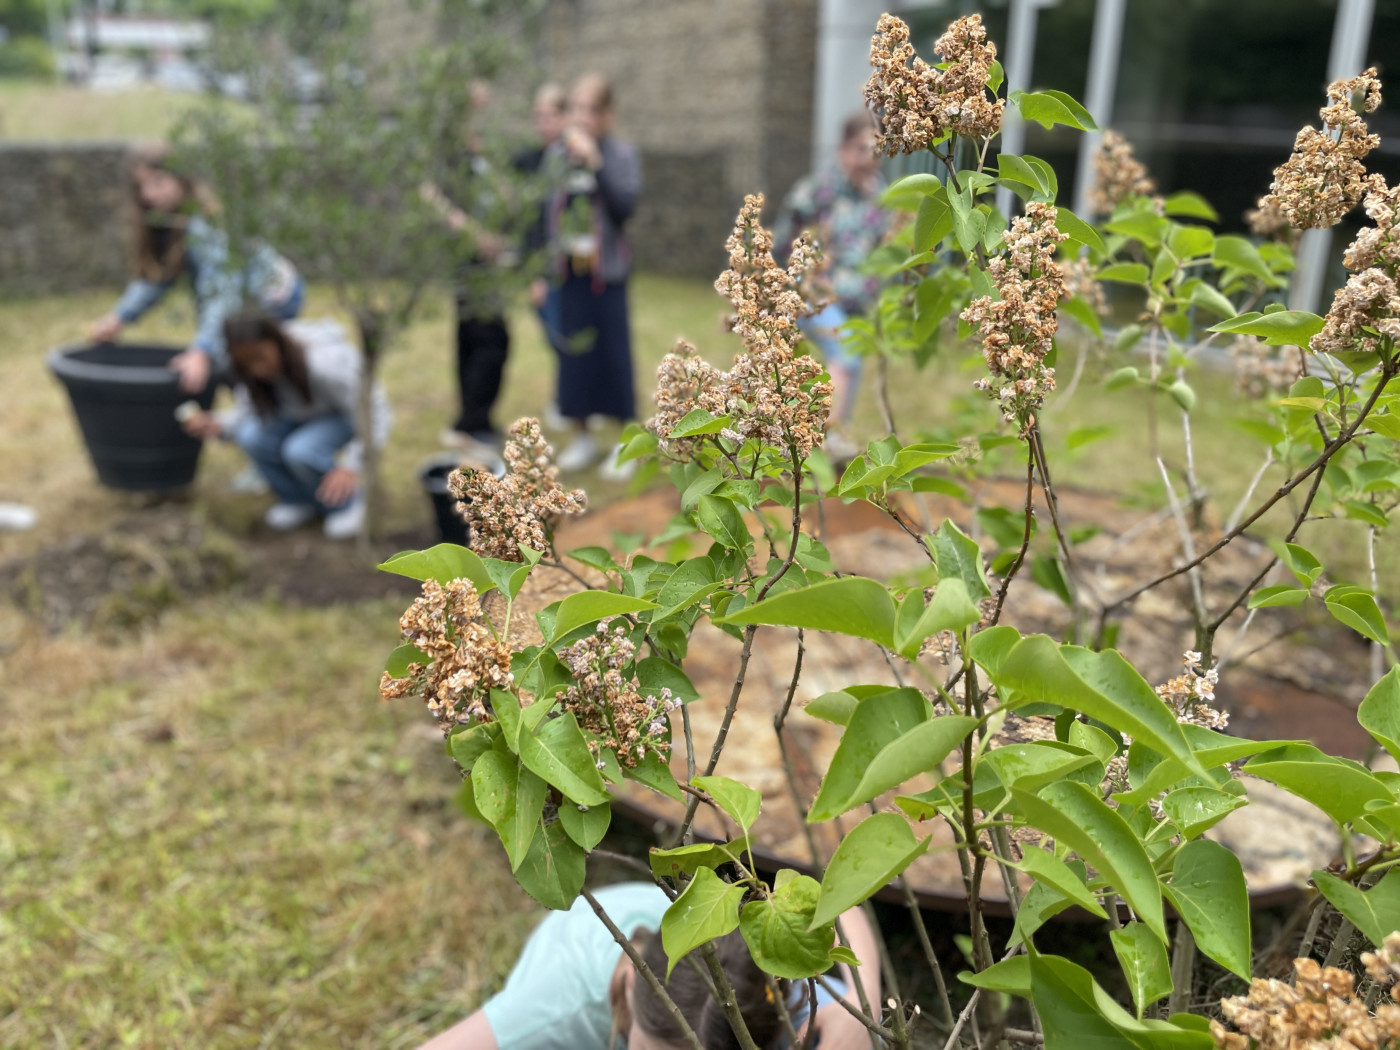 MGW pflanzt zwei Bäume - hauseigener Klimaschutz zum Jubiläum der Caritas in Essen